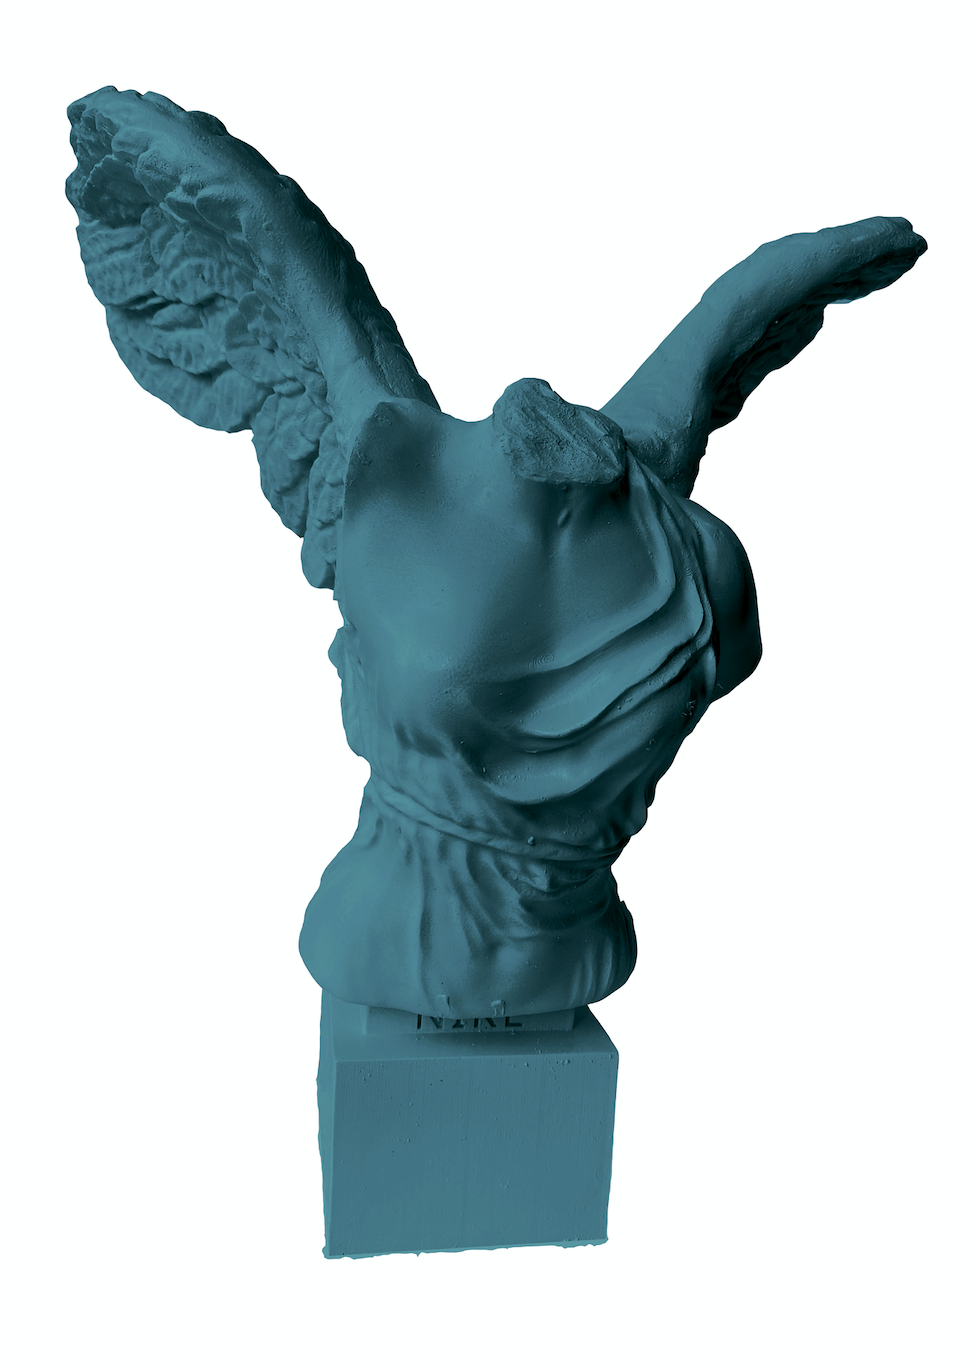 Busto Nike in resina ottanio Palais Royal